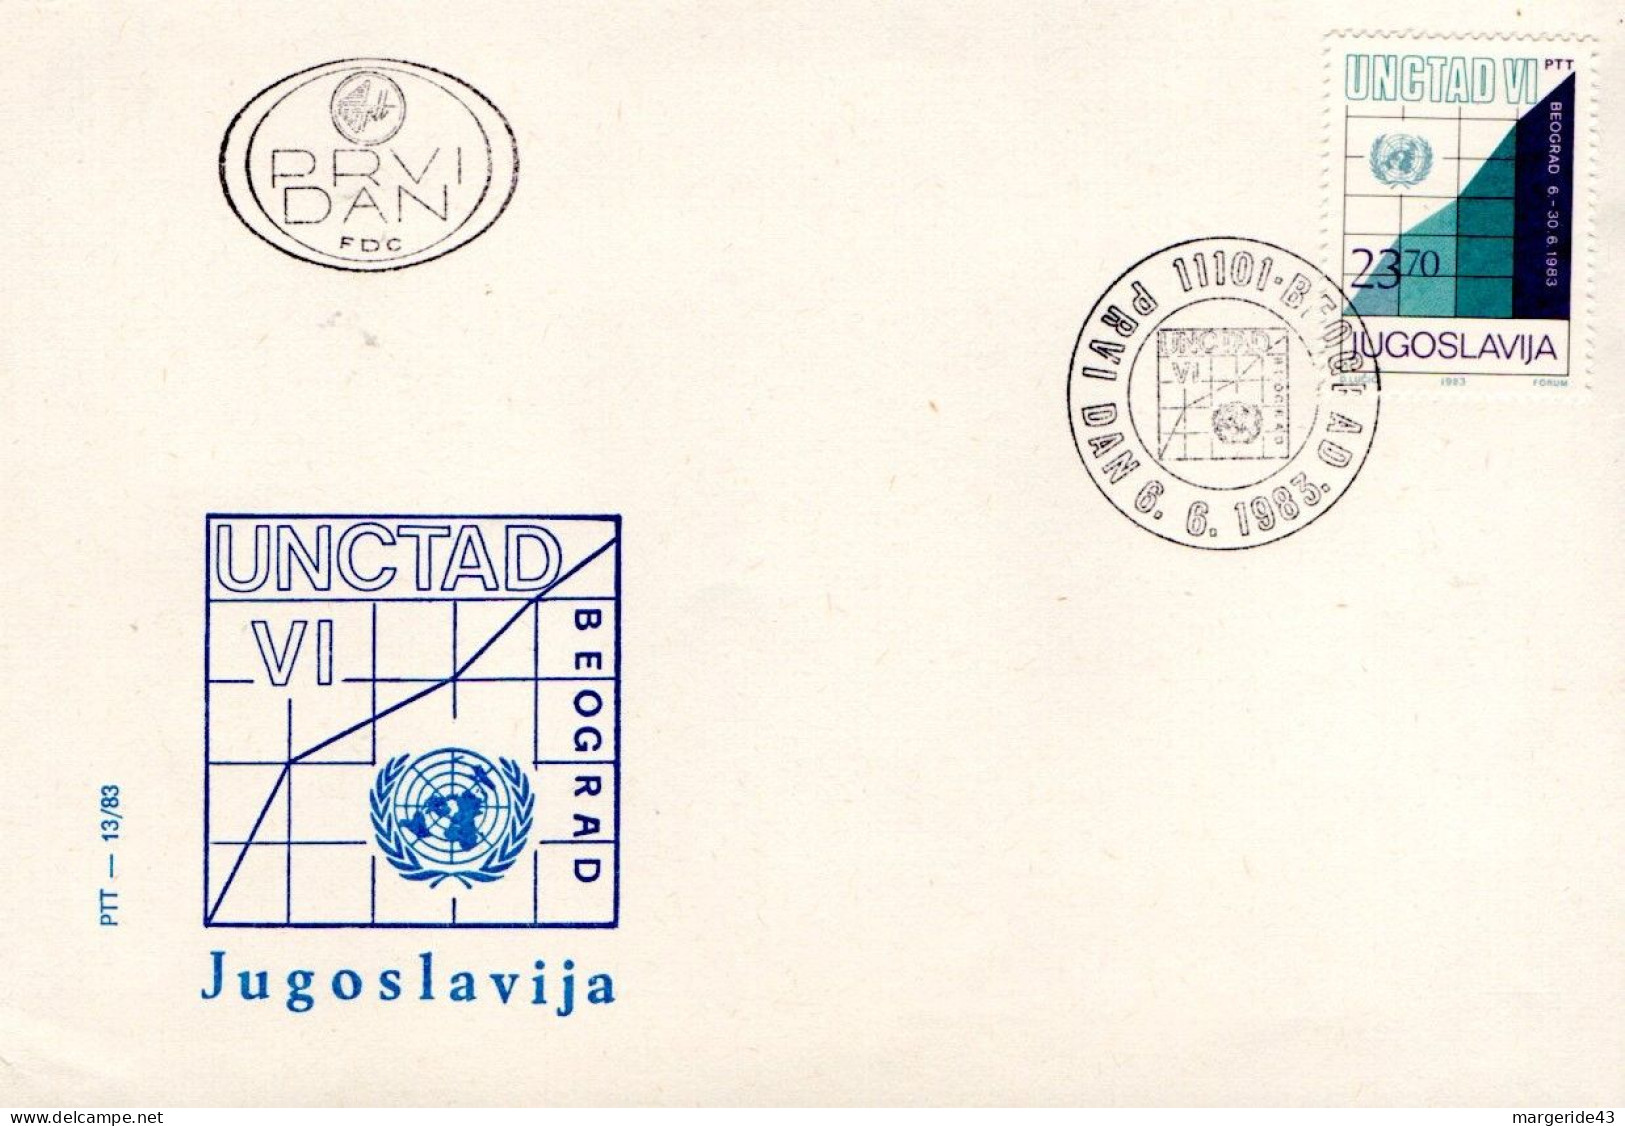 YOUGOSLAVIOE FDC 1983 CONGRES UNCTAD BEOGRAD - Briefe U. Dokumente